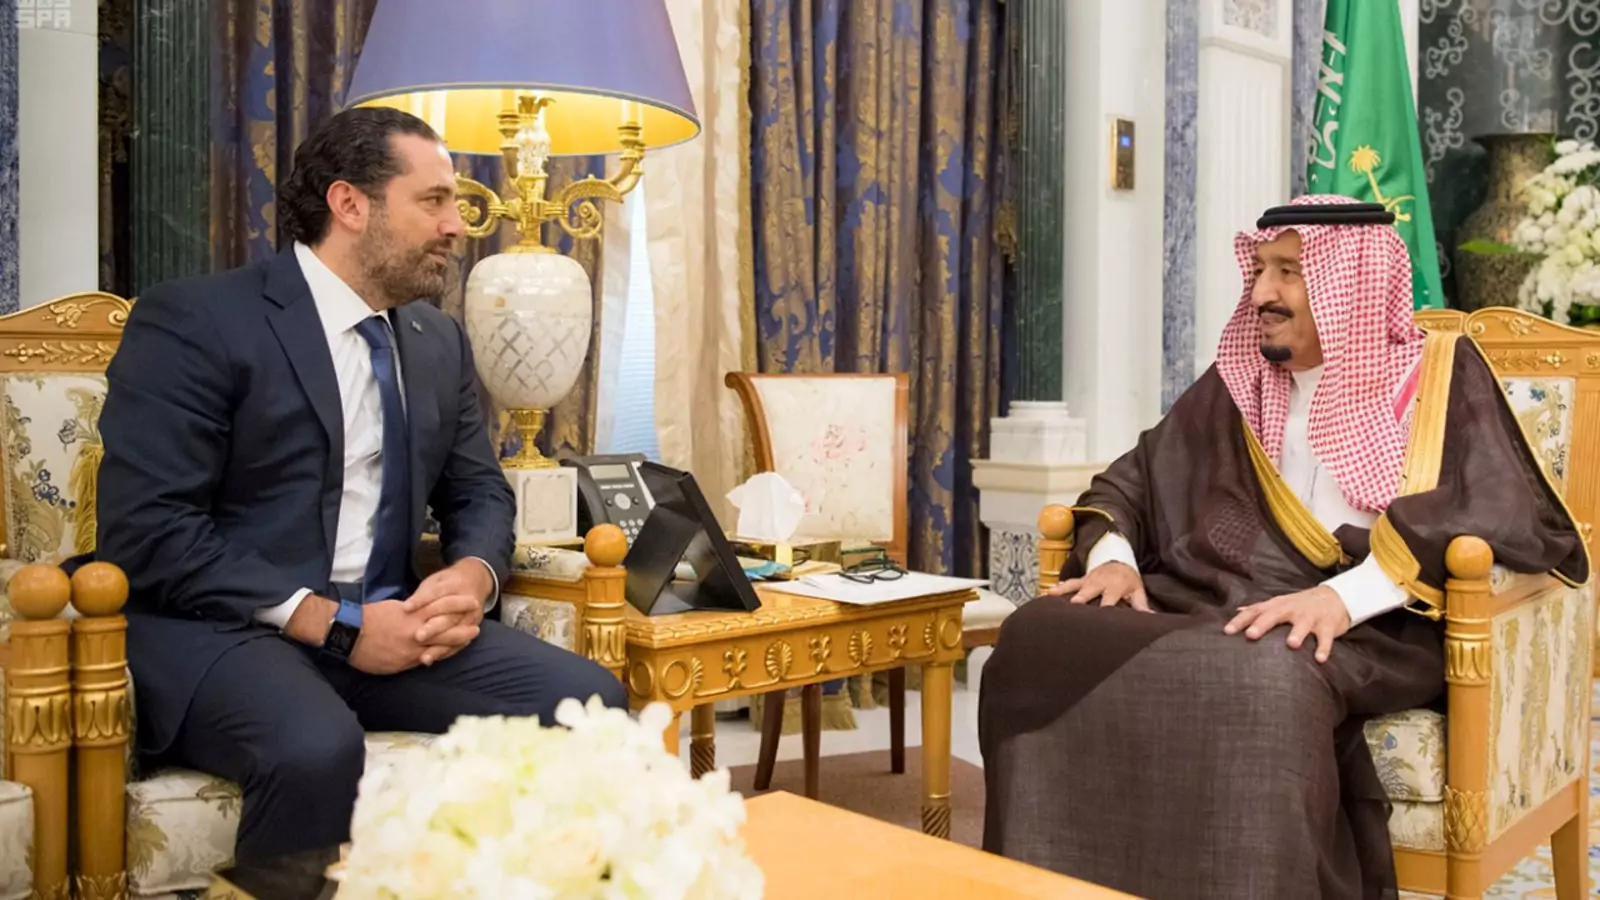 King Salman meets with Saad Hariri in Riyadh.